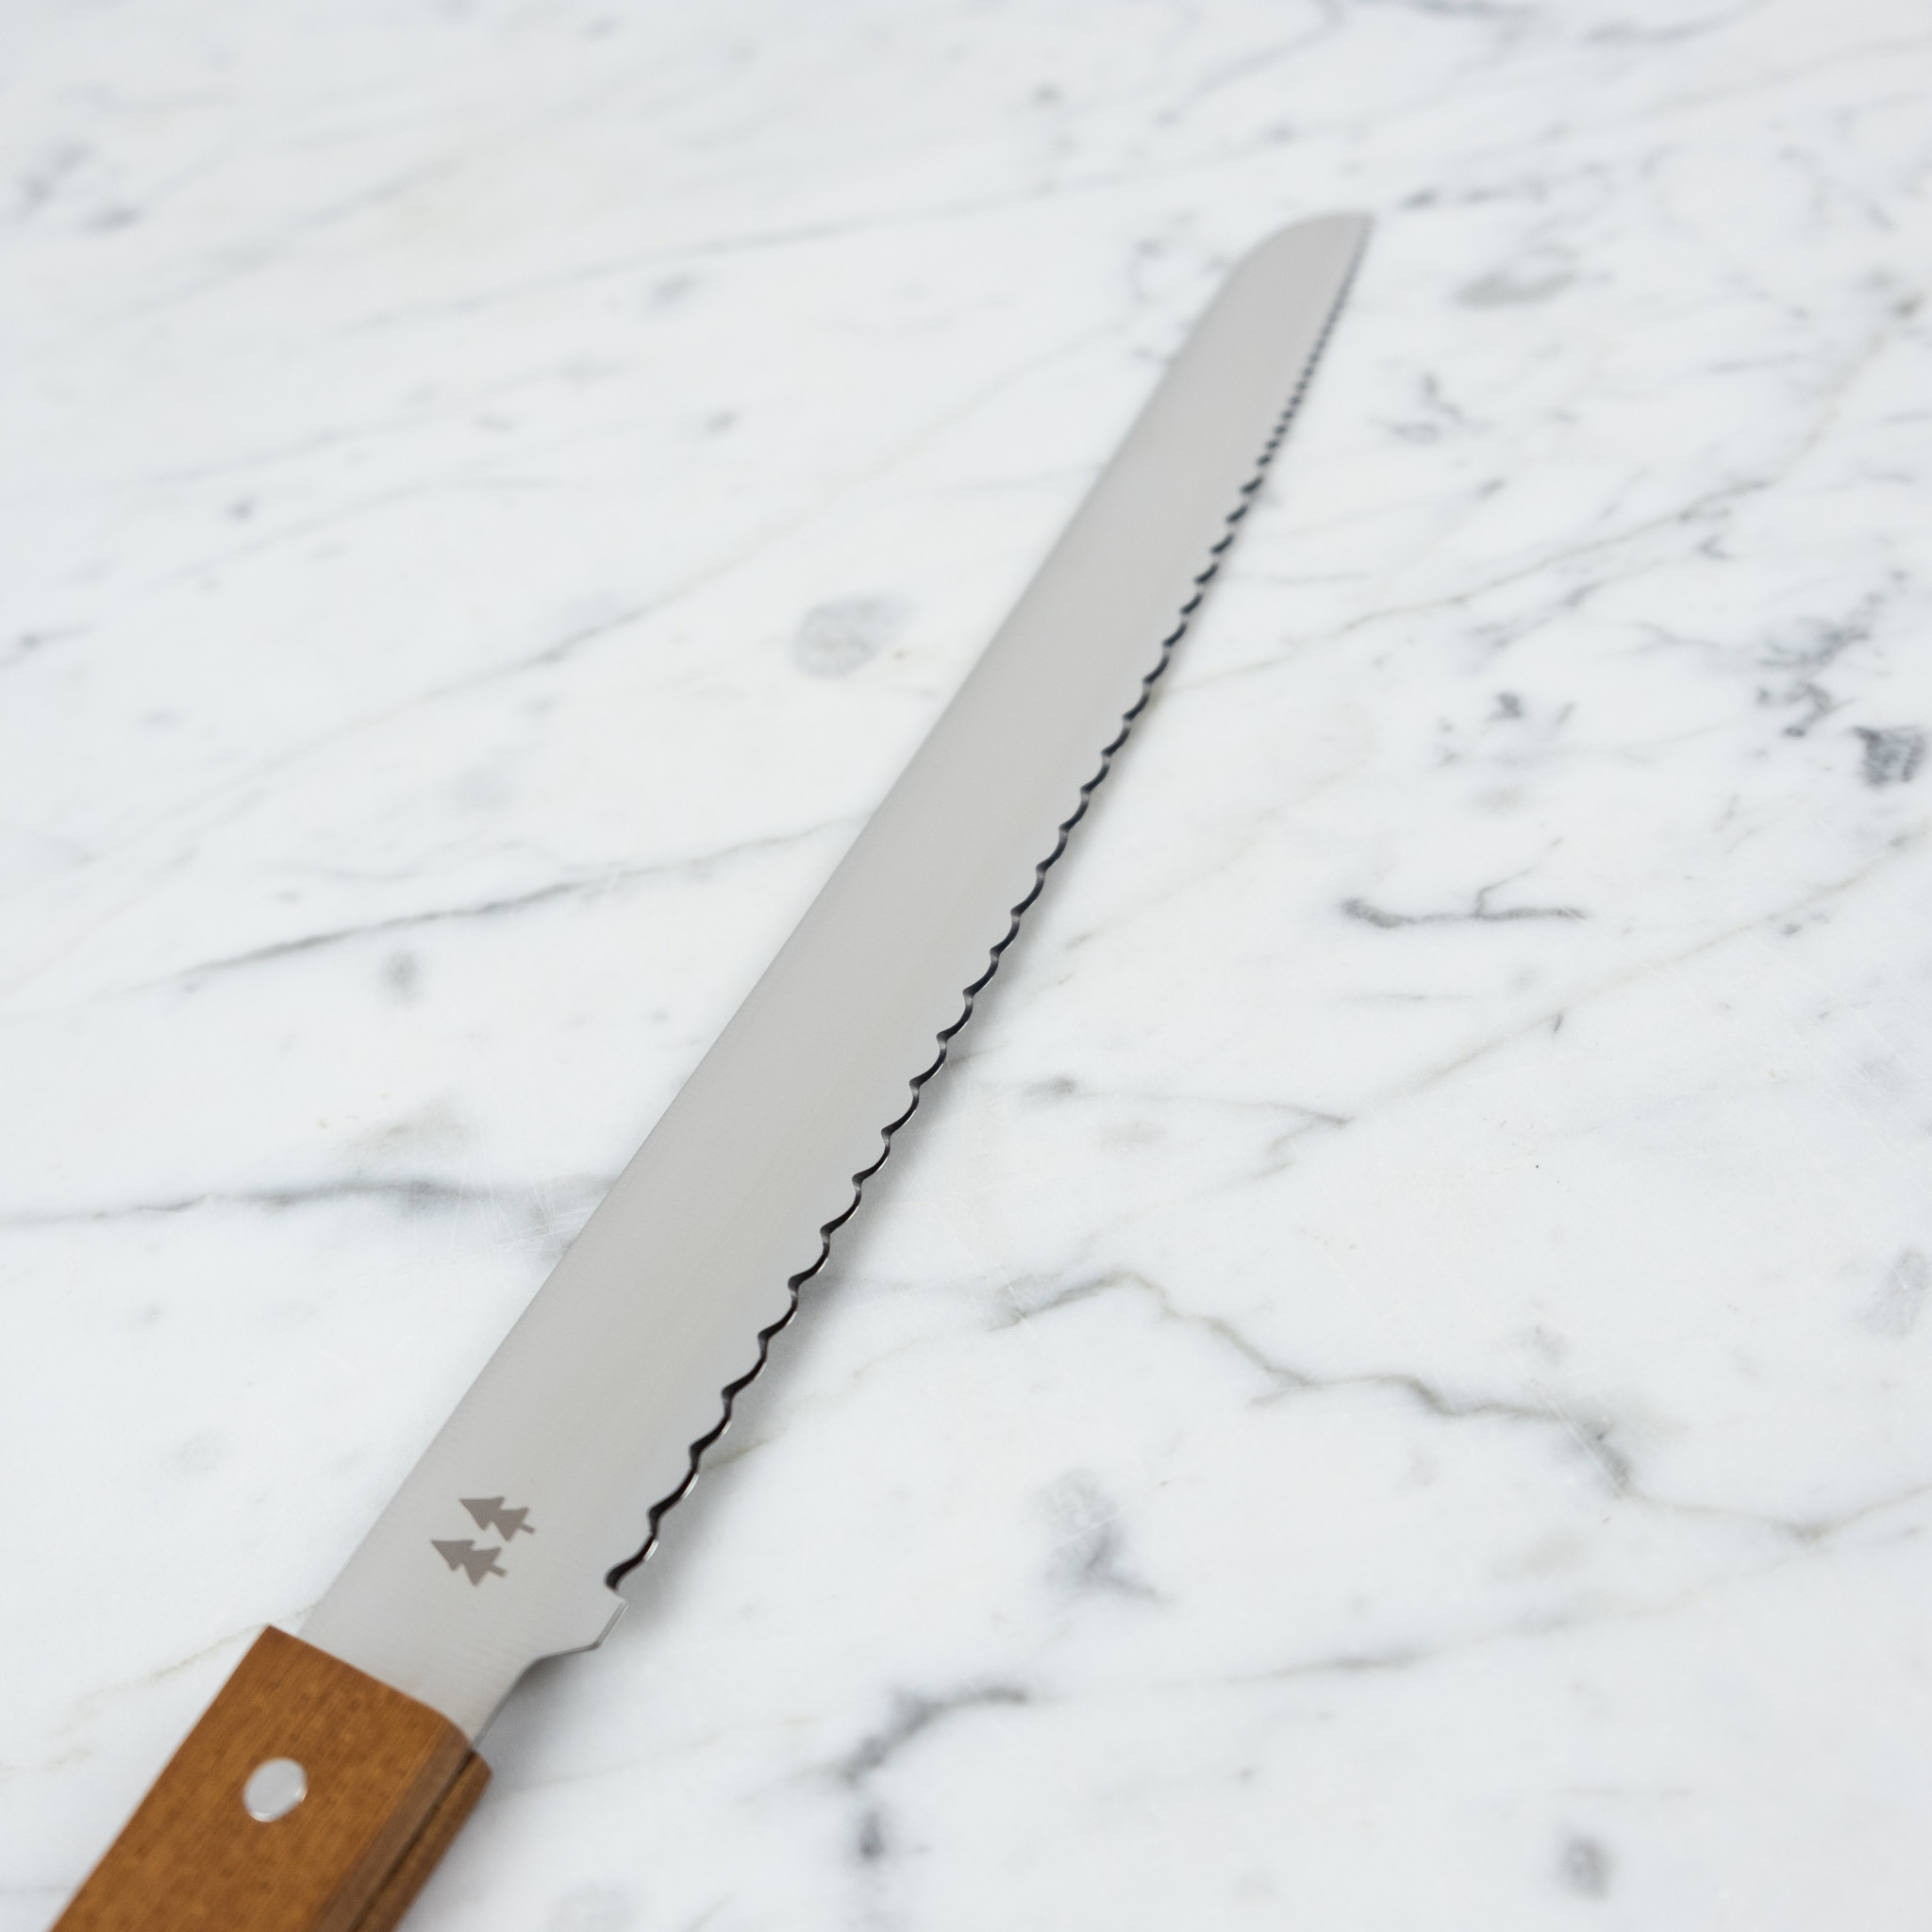 Morinoki Bread Knife - 14.5"